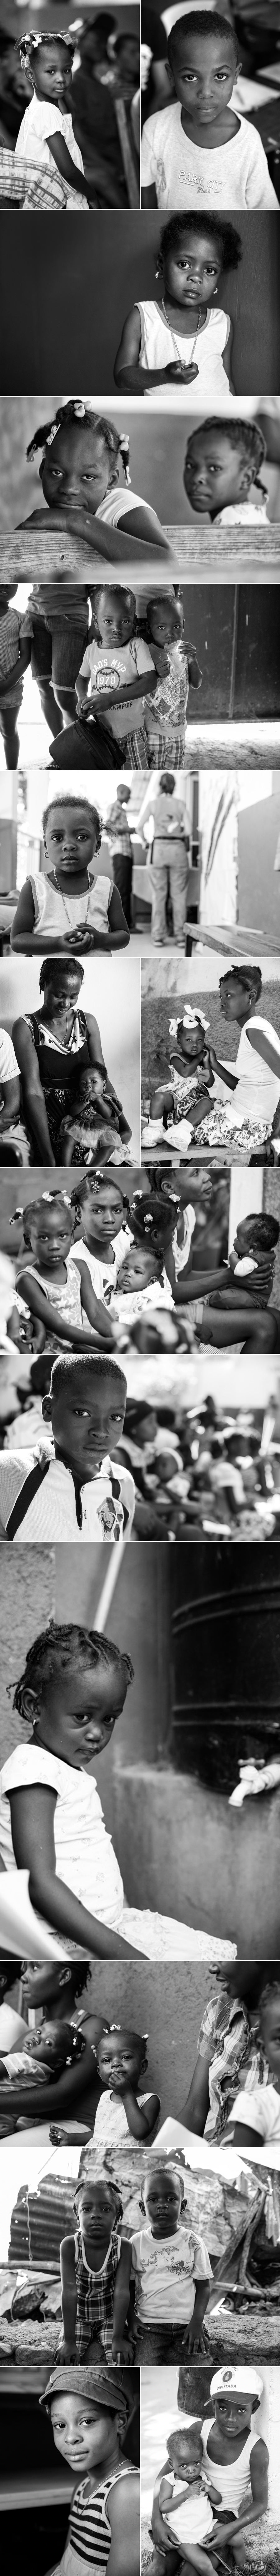 Haiti_Children_Waiting